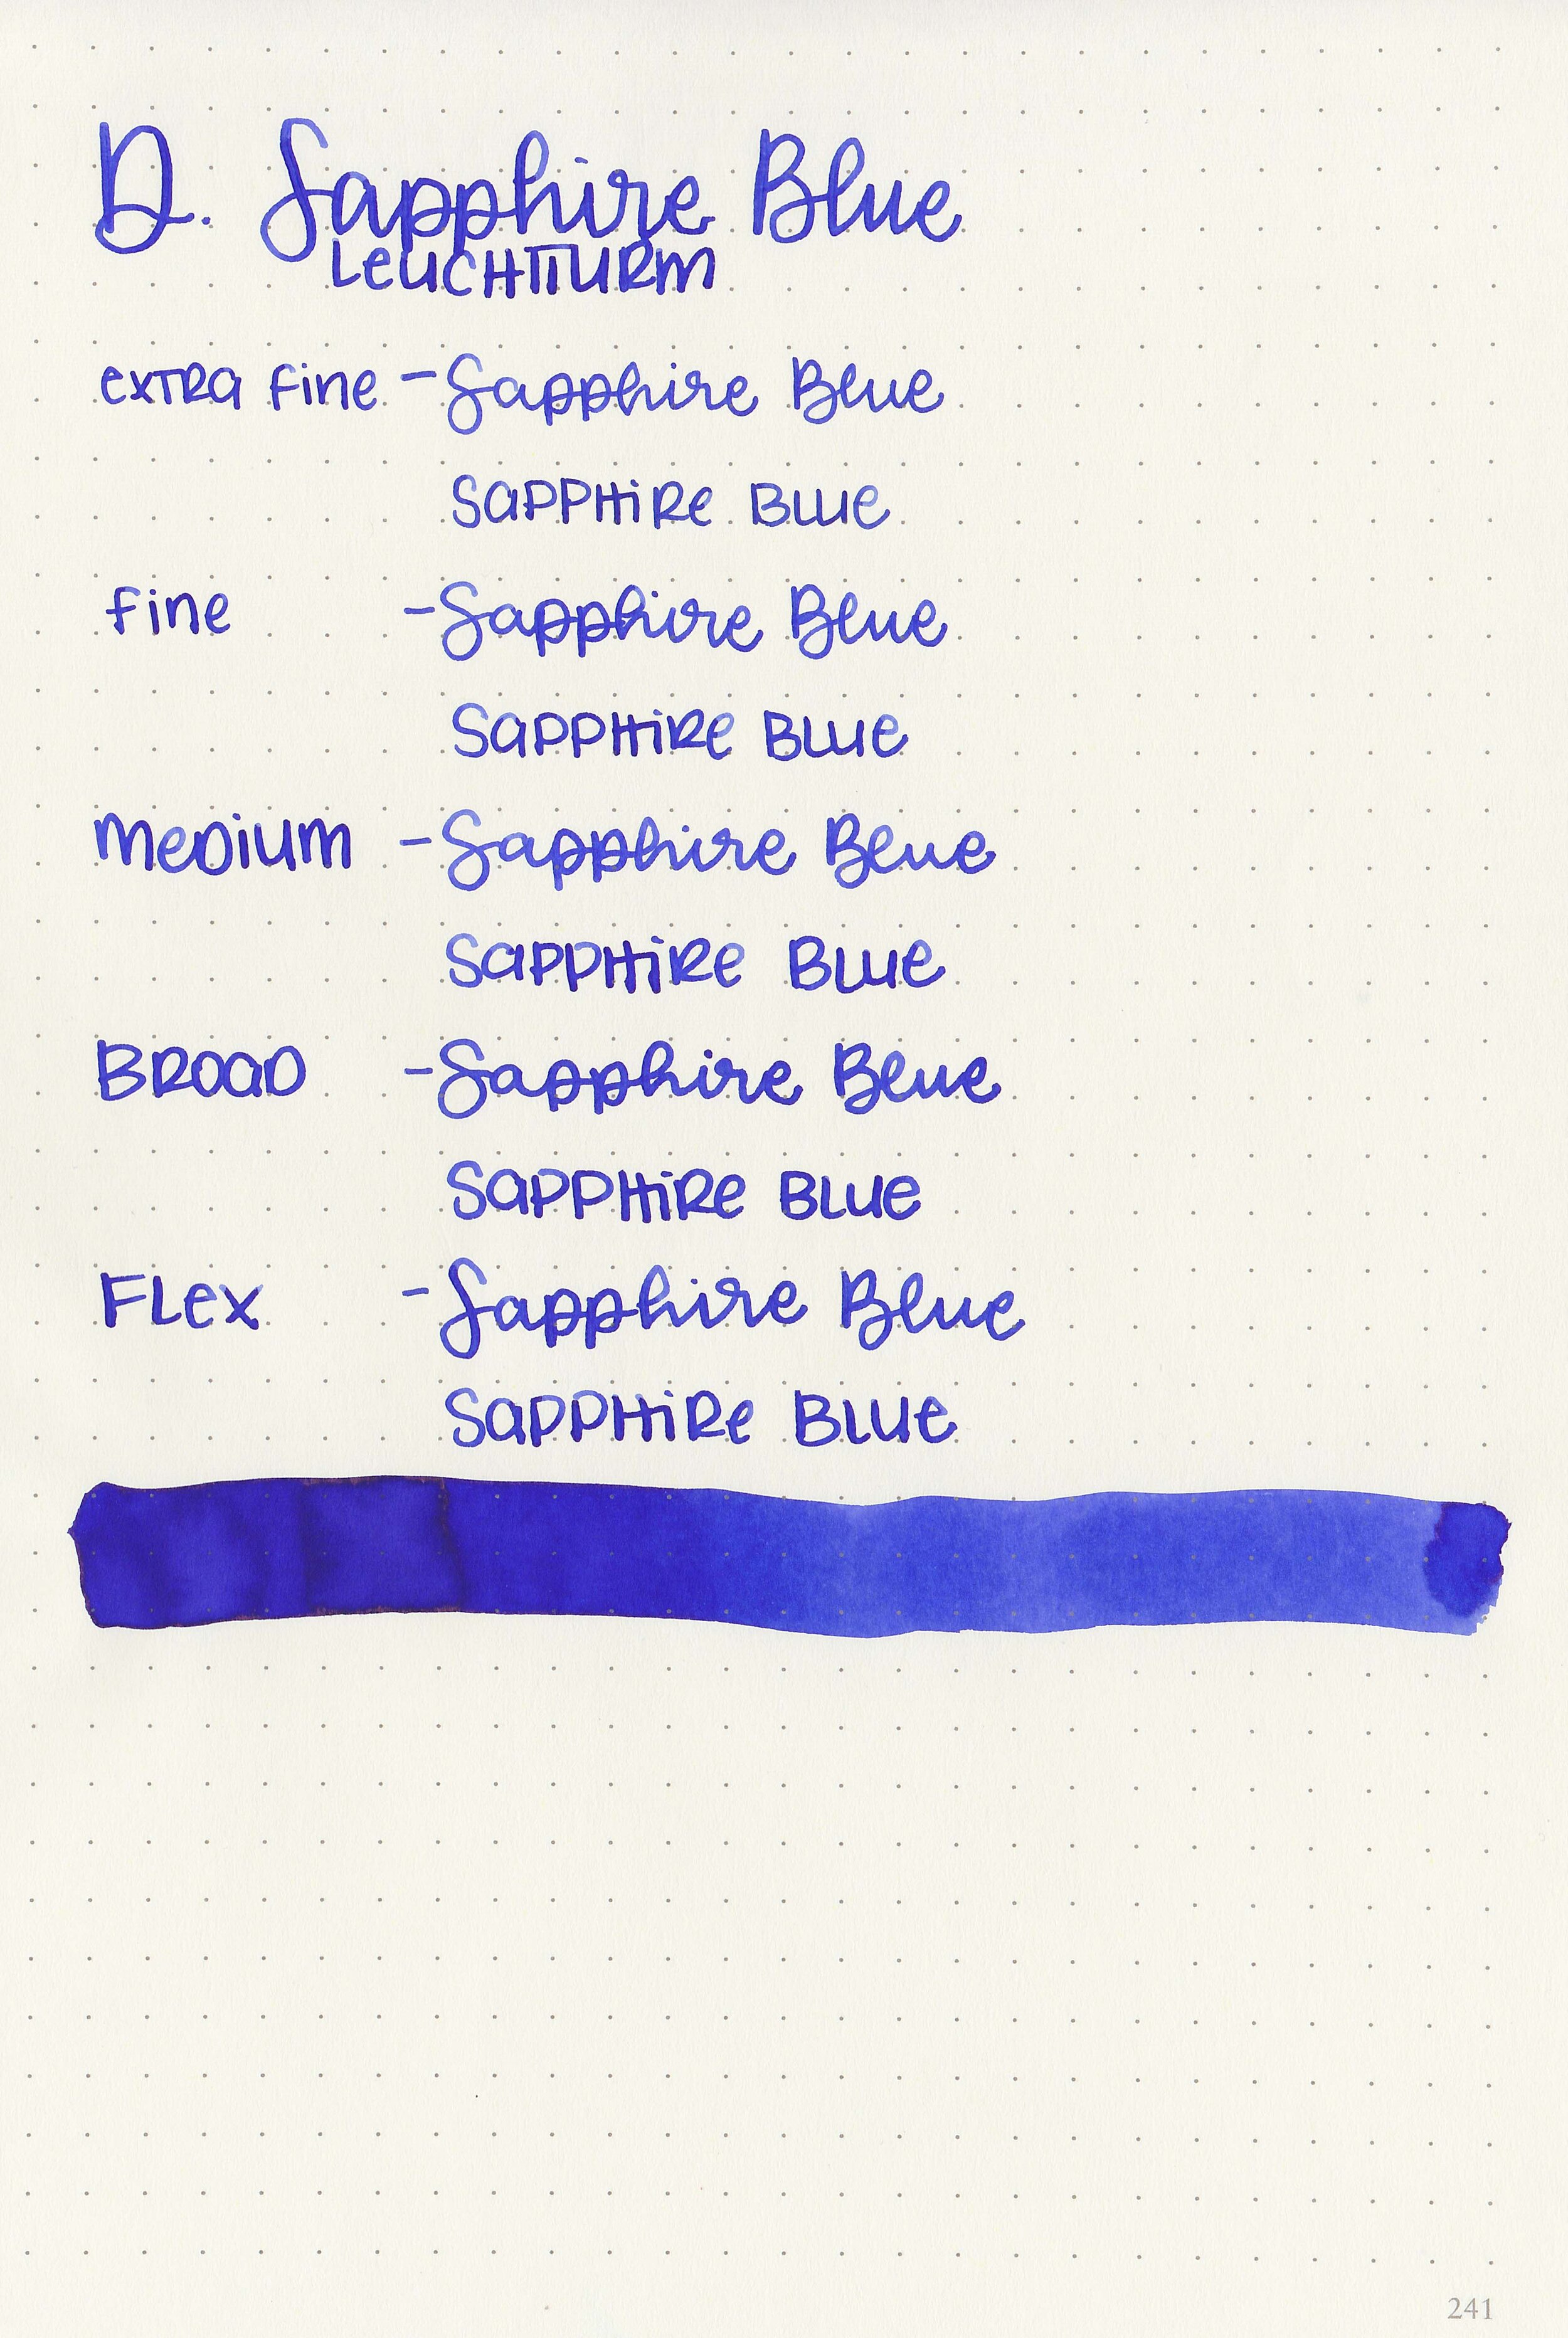 d-sapphire-blue-9.jpg